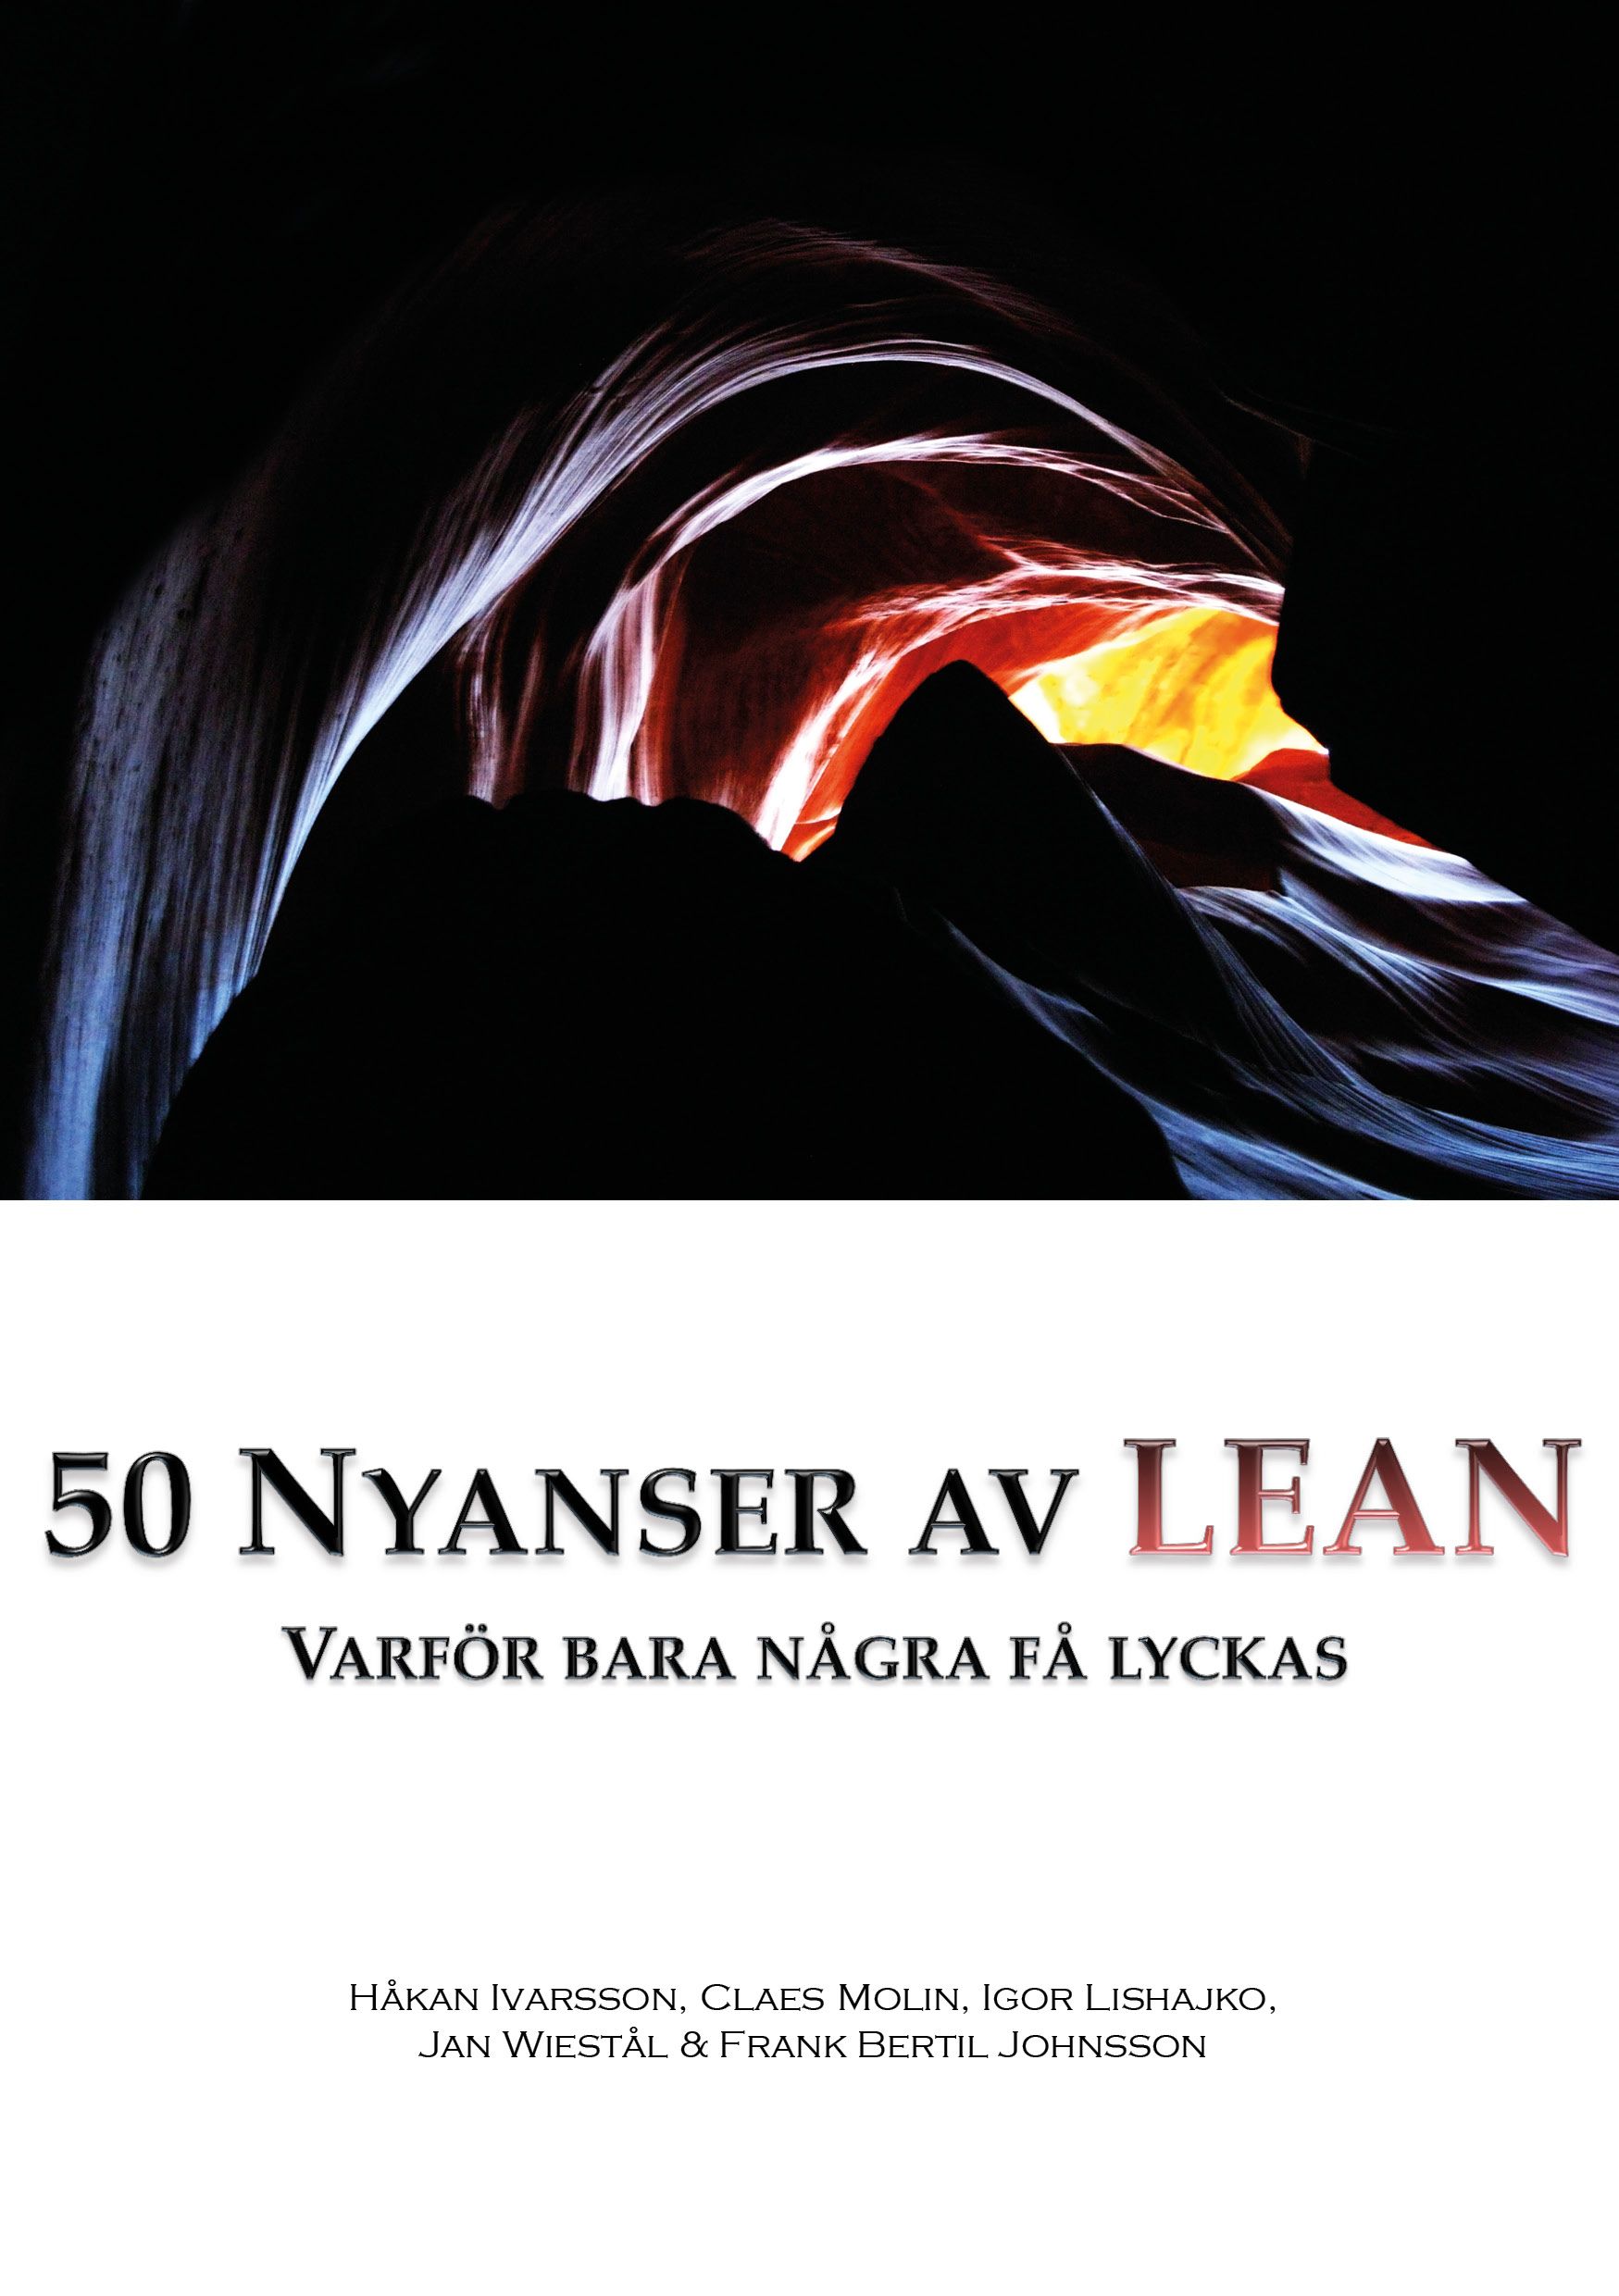 50 nyanser av LEAN, e-bok av Håkan Ivarsson, Frank Bertil Johnsson, Igor Lishajko, Claes Molin, Jan Wiestål